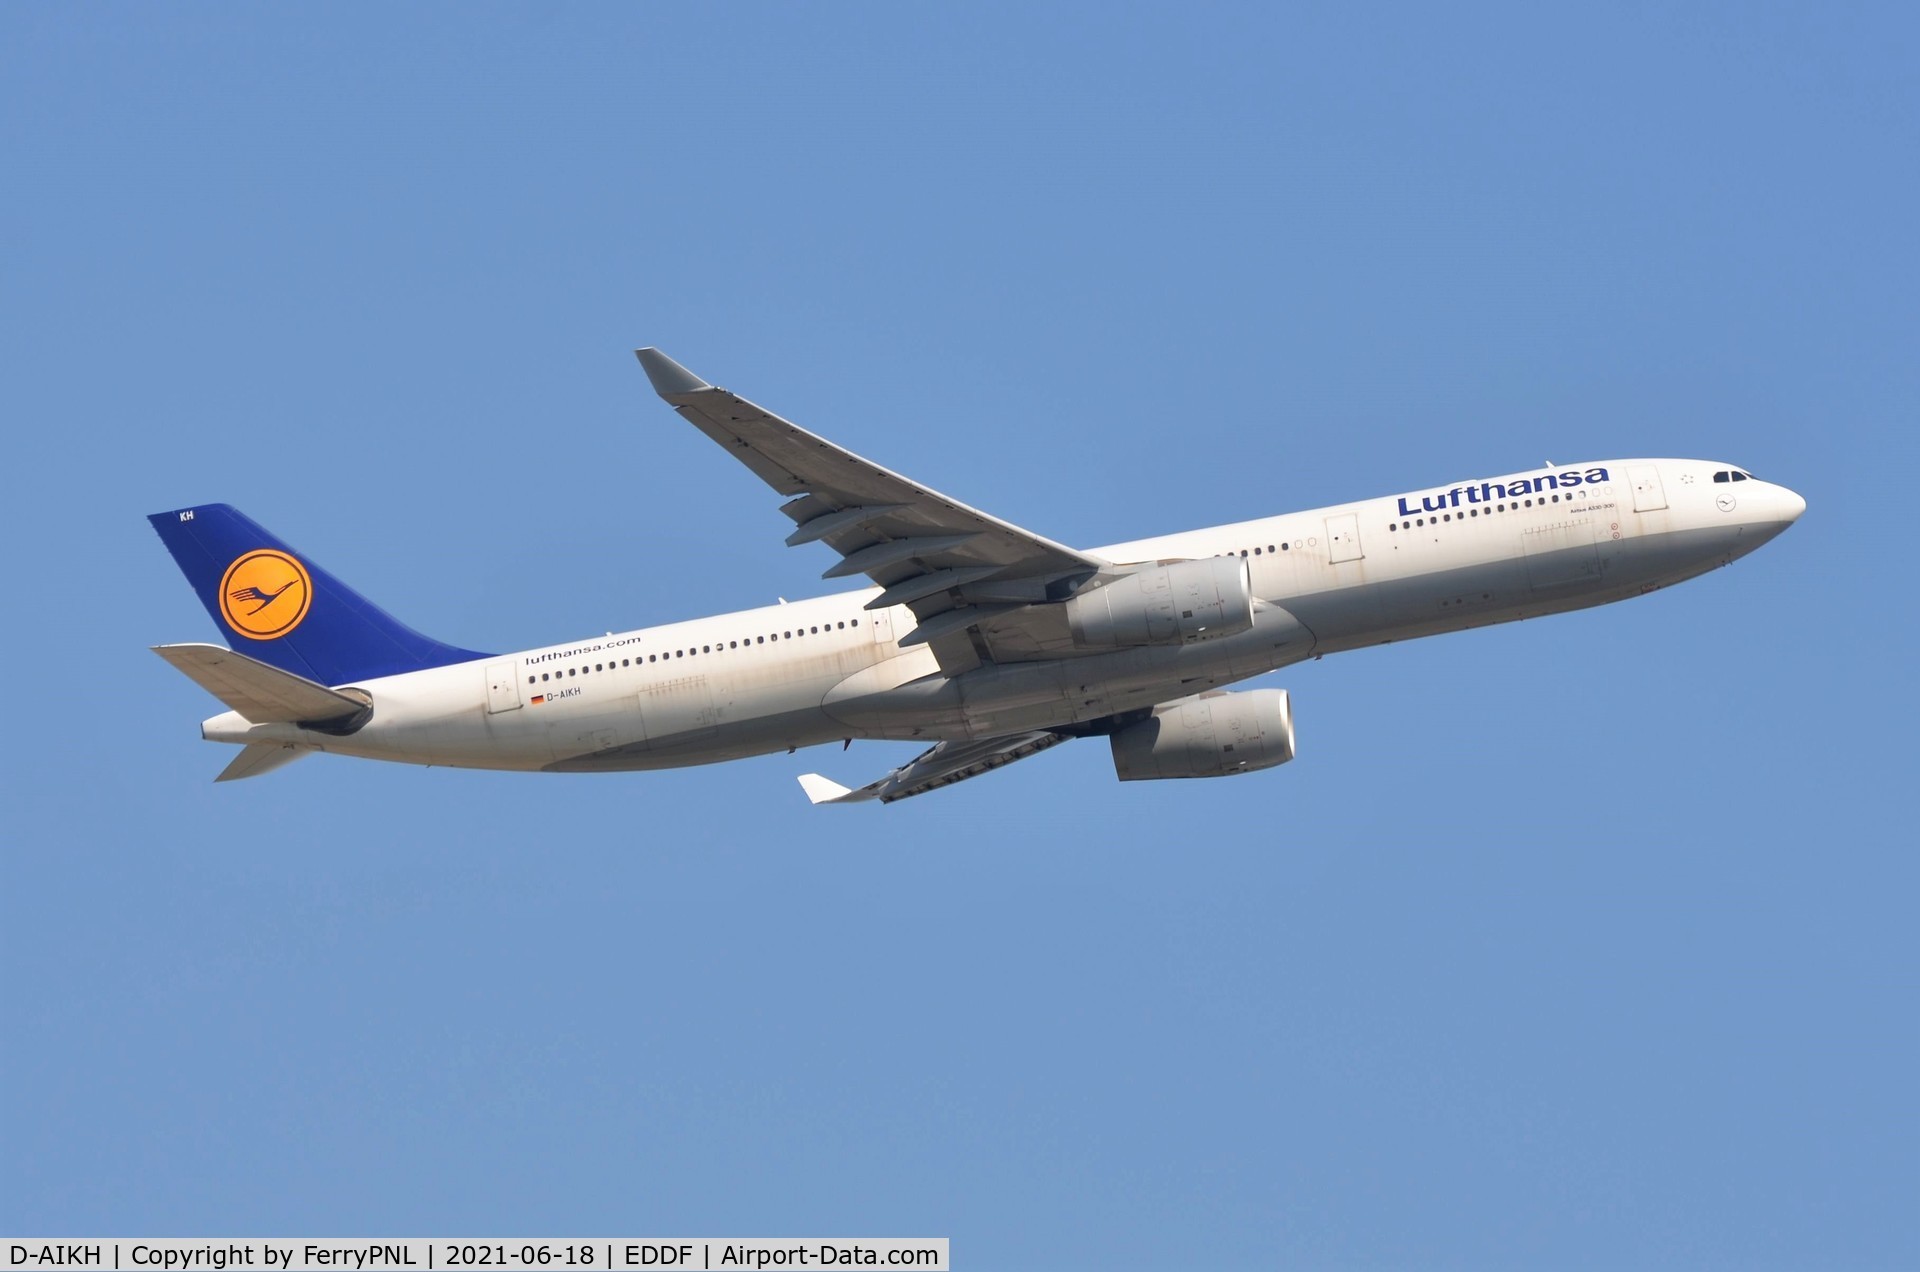 D-AIKH, 2005 Airbus A330-343X C/N 648, Lufthansa A333